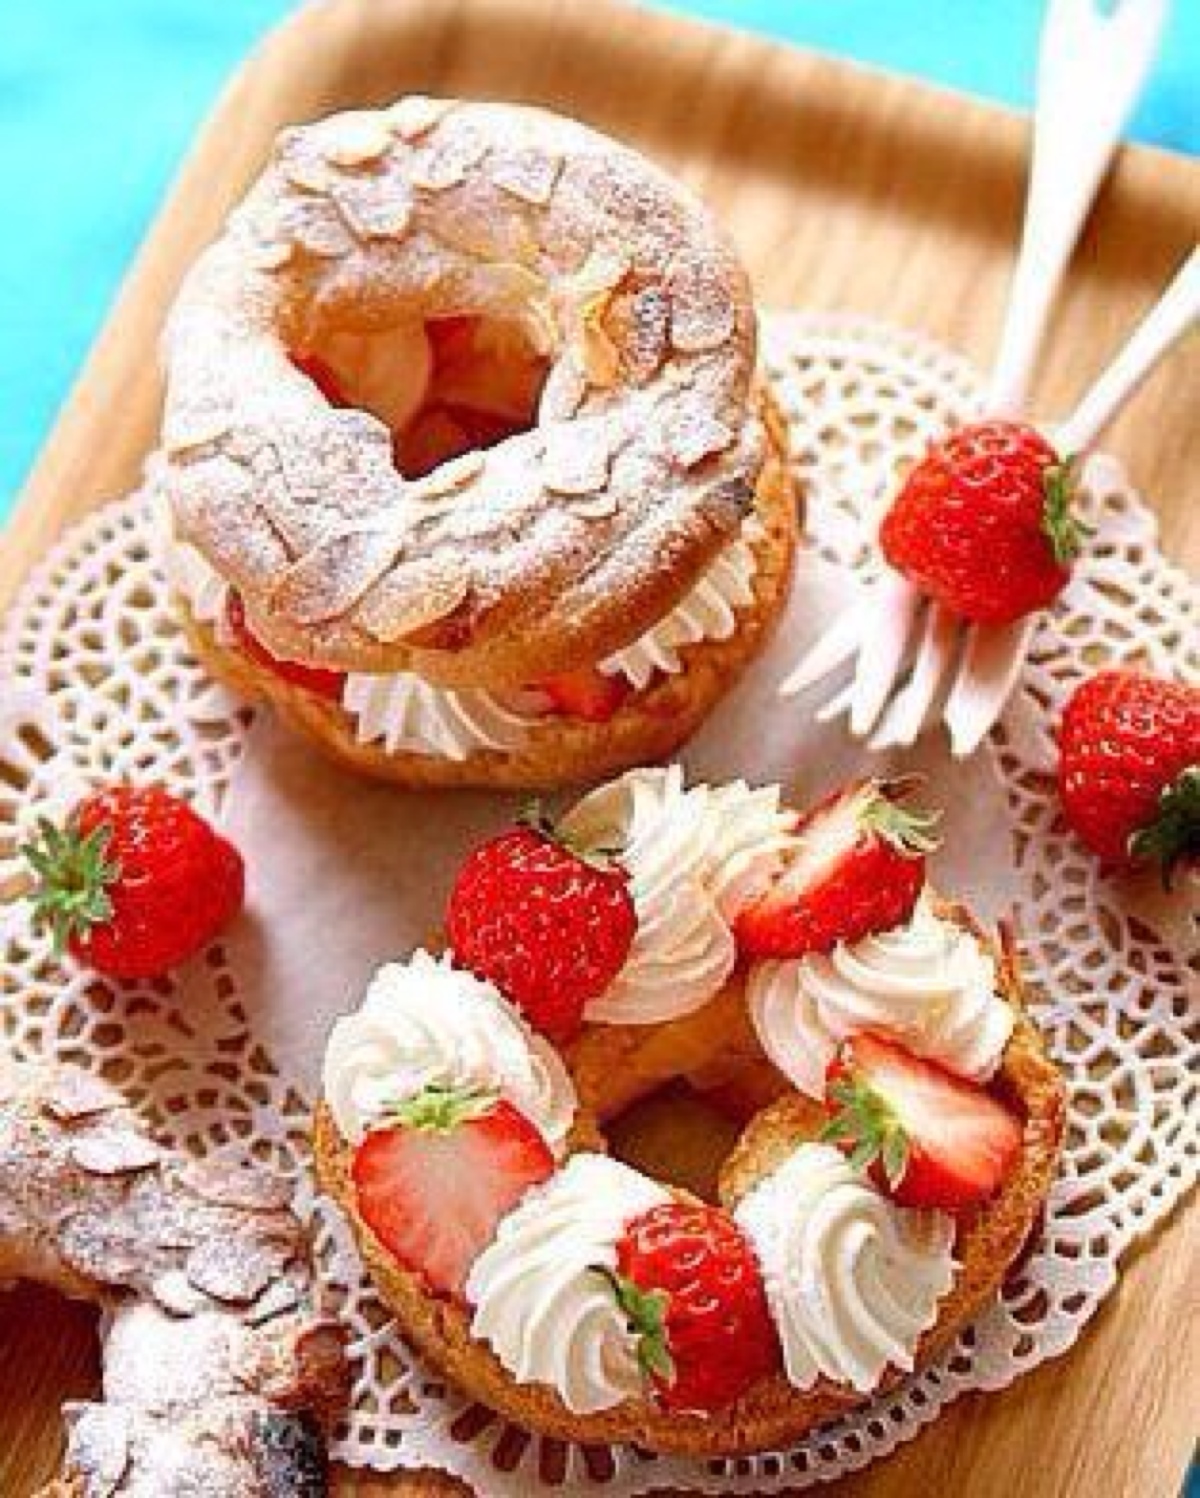 草莓奶油甜甜圈,甜甜圈蛋糕傻傻分不清楚(ˉ『ˉ)